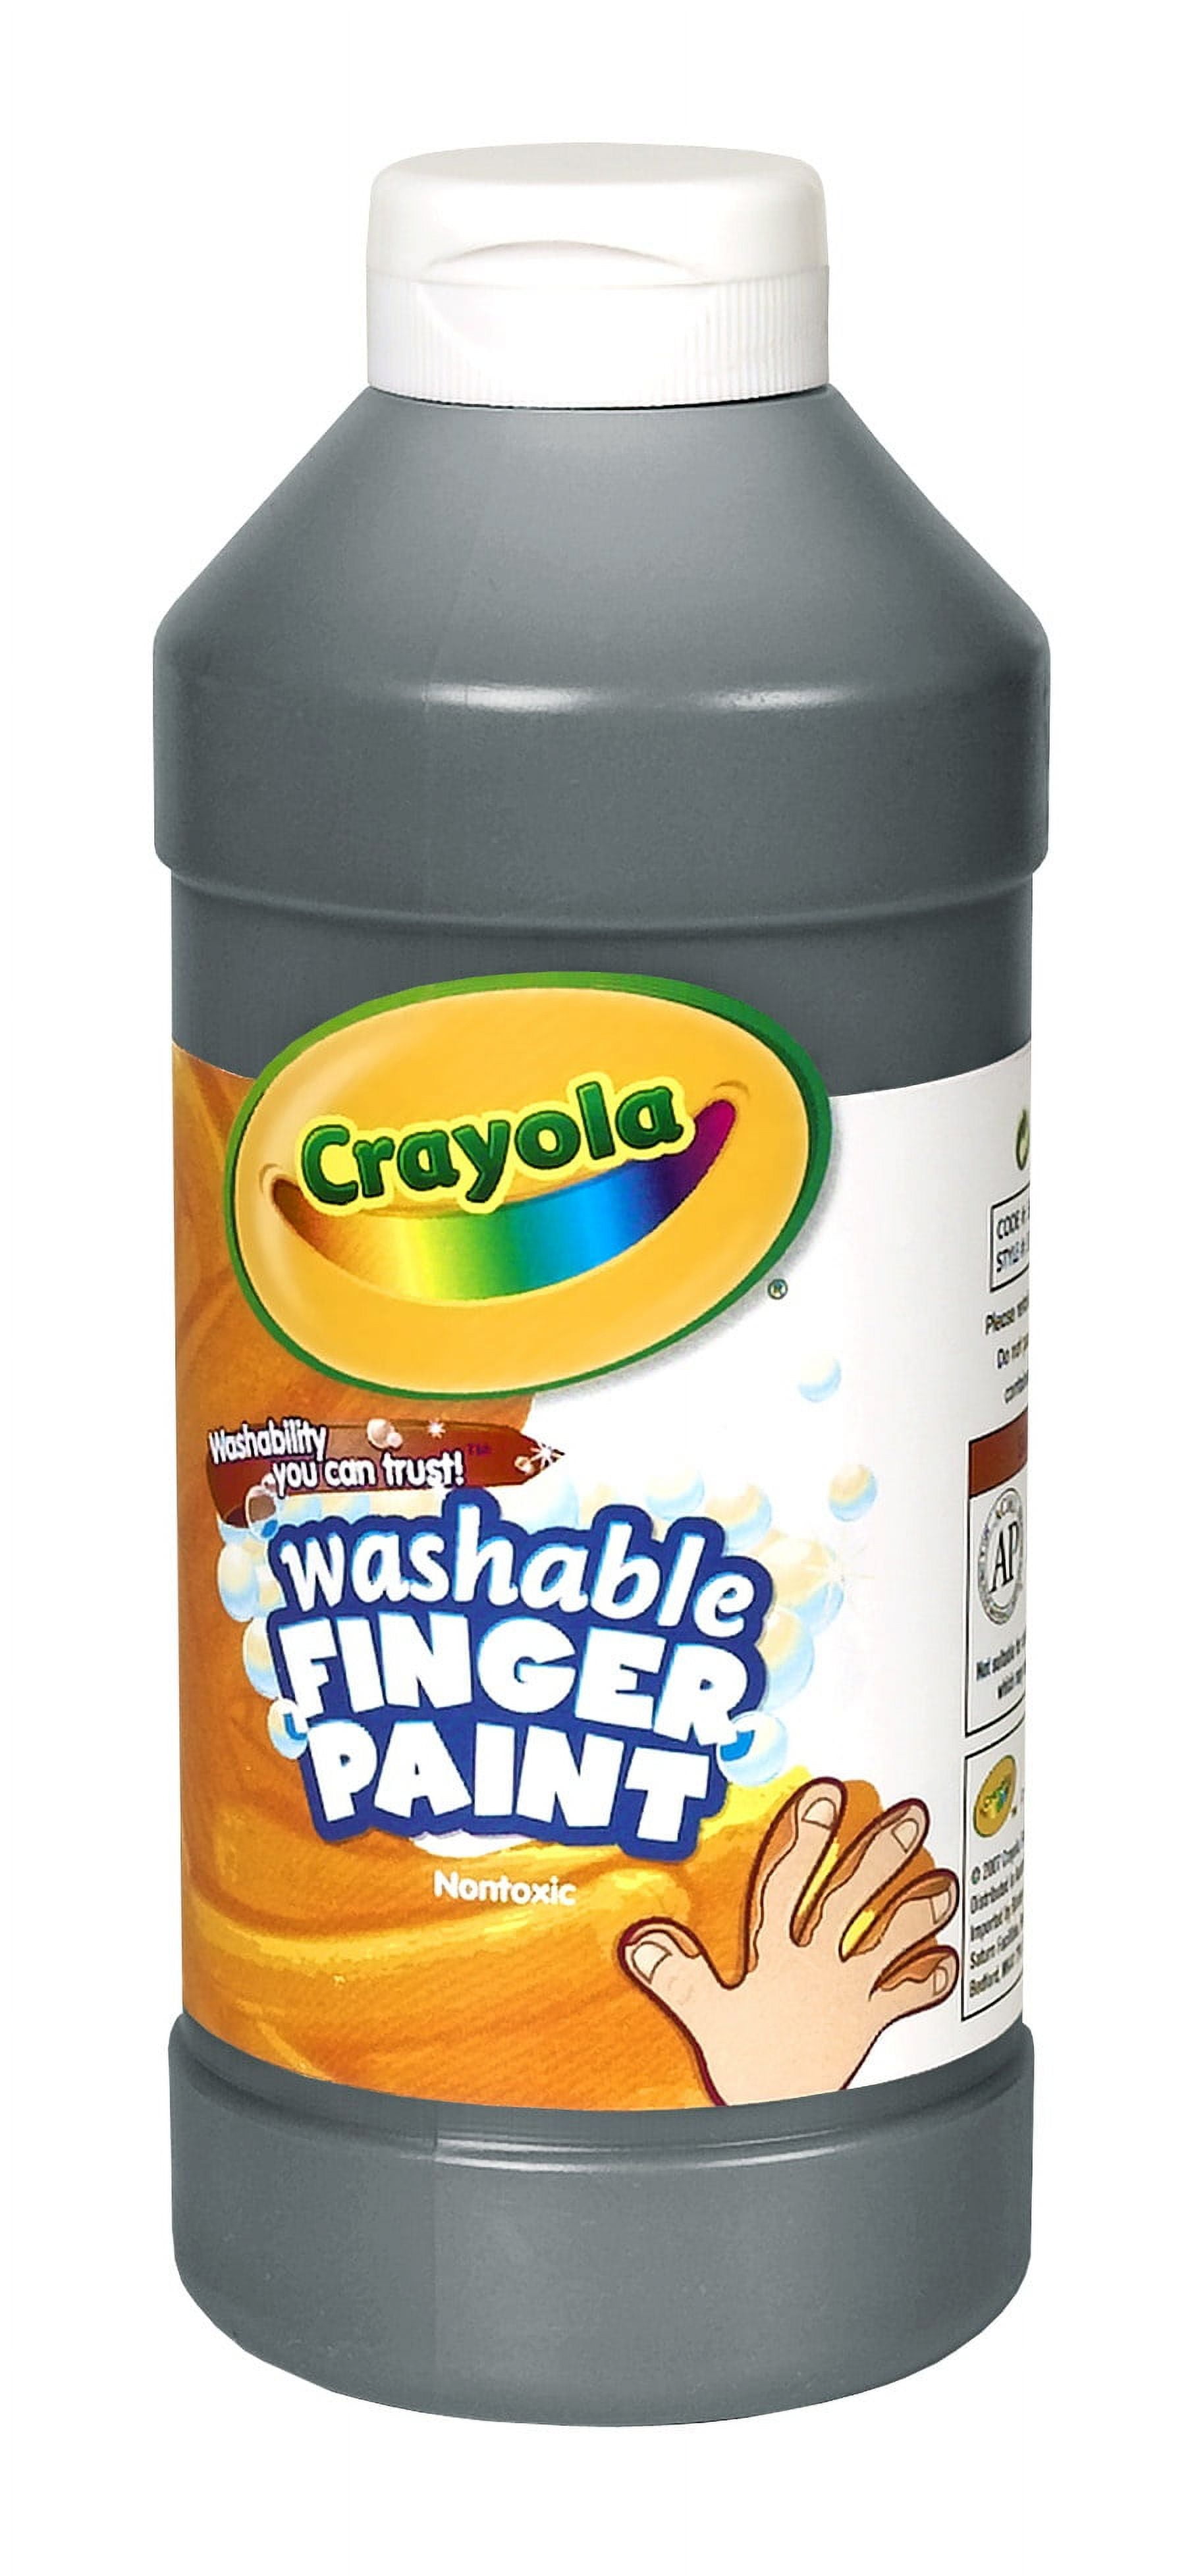 Crayola Washable Fingerpaint, Black, 16 fl oz